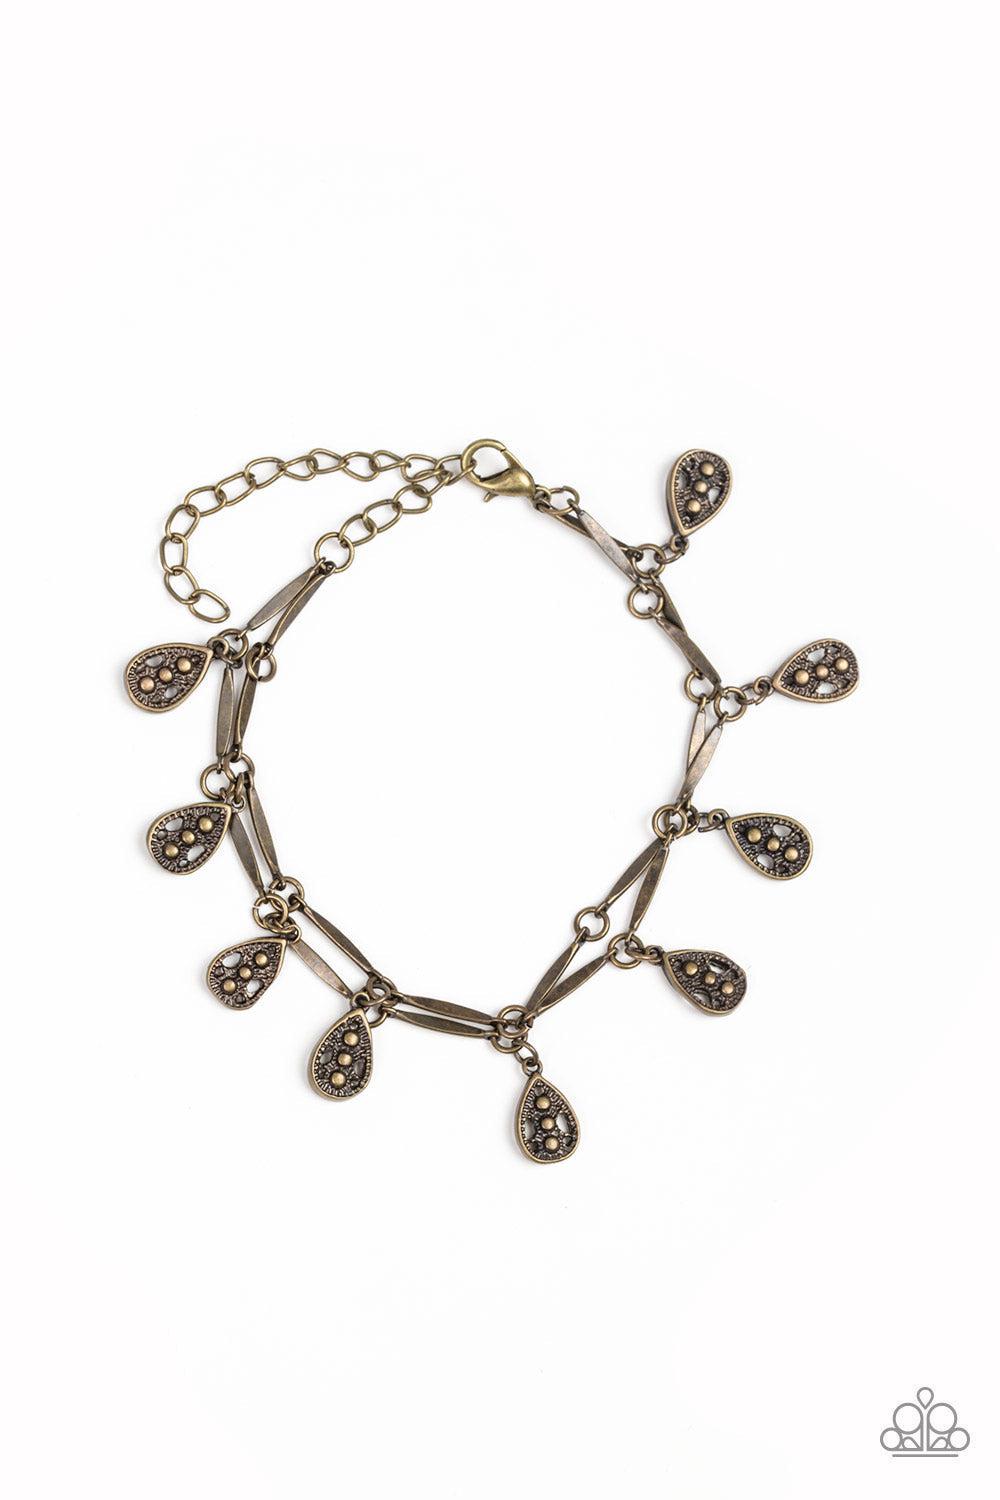 Gypsy Glee Brass Bracelet - Paparazzi Accessories- lightbox - CarasShop.com - $5 Jewelry by Cara Jewels